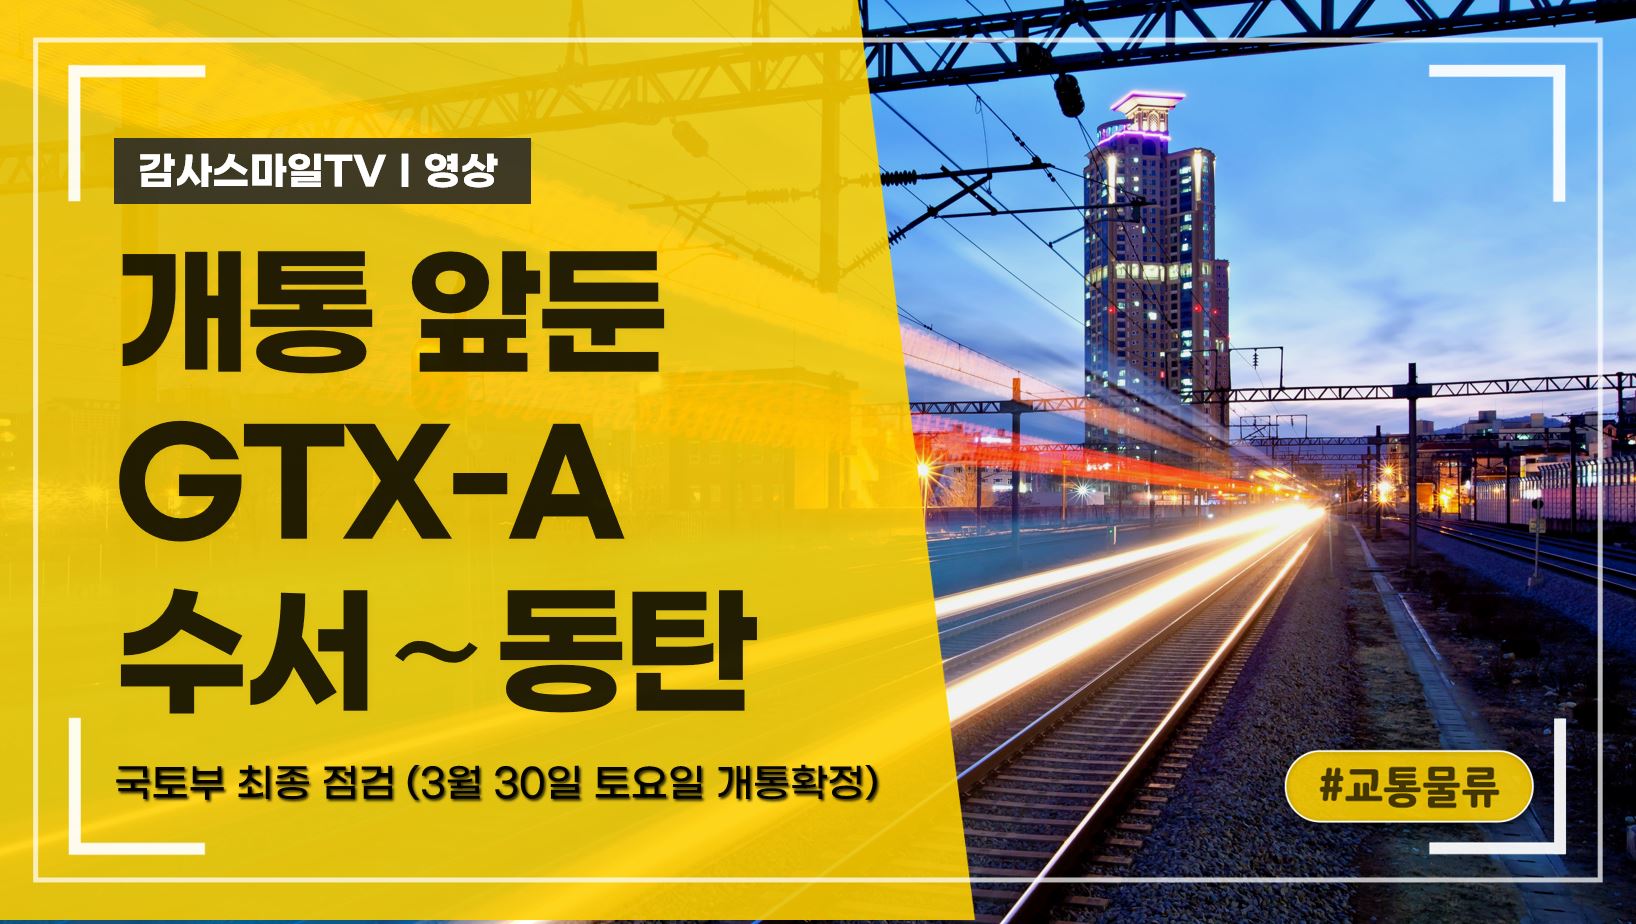 개통 앞둔 GTX-A 수서∼동탄…국토부 최종 점검 (3월 30일 토요일 개통확정)